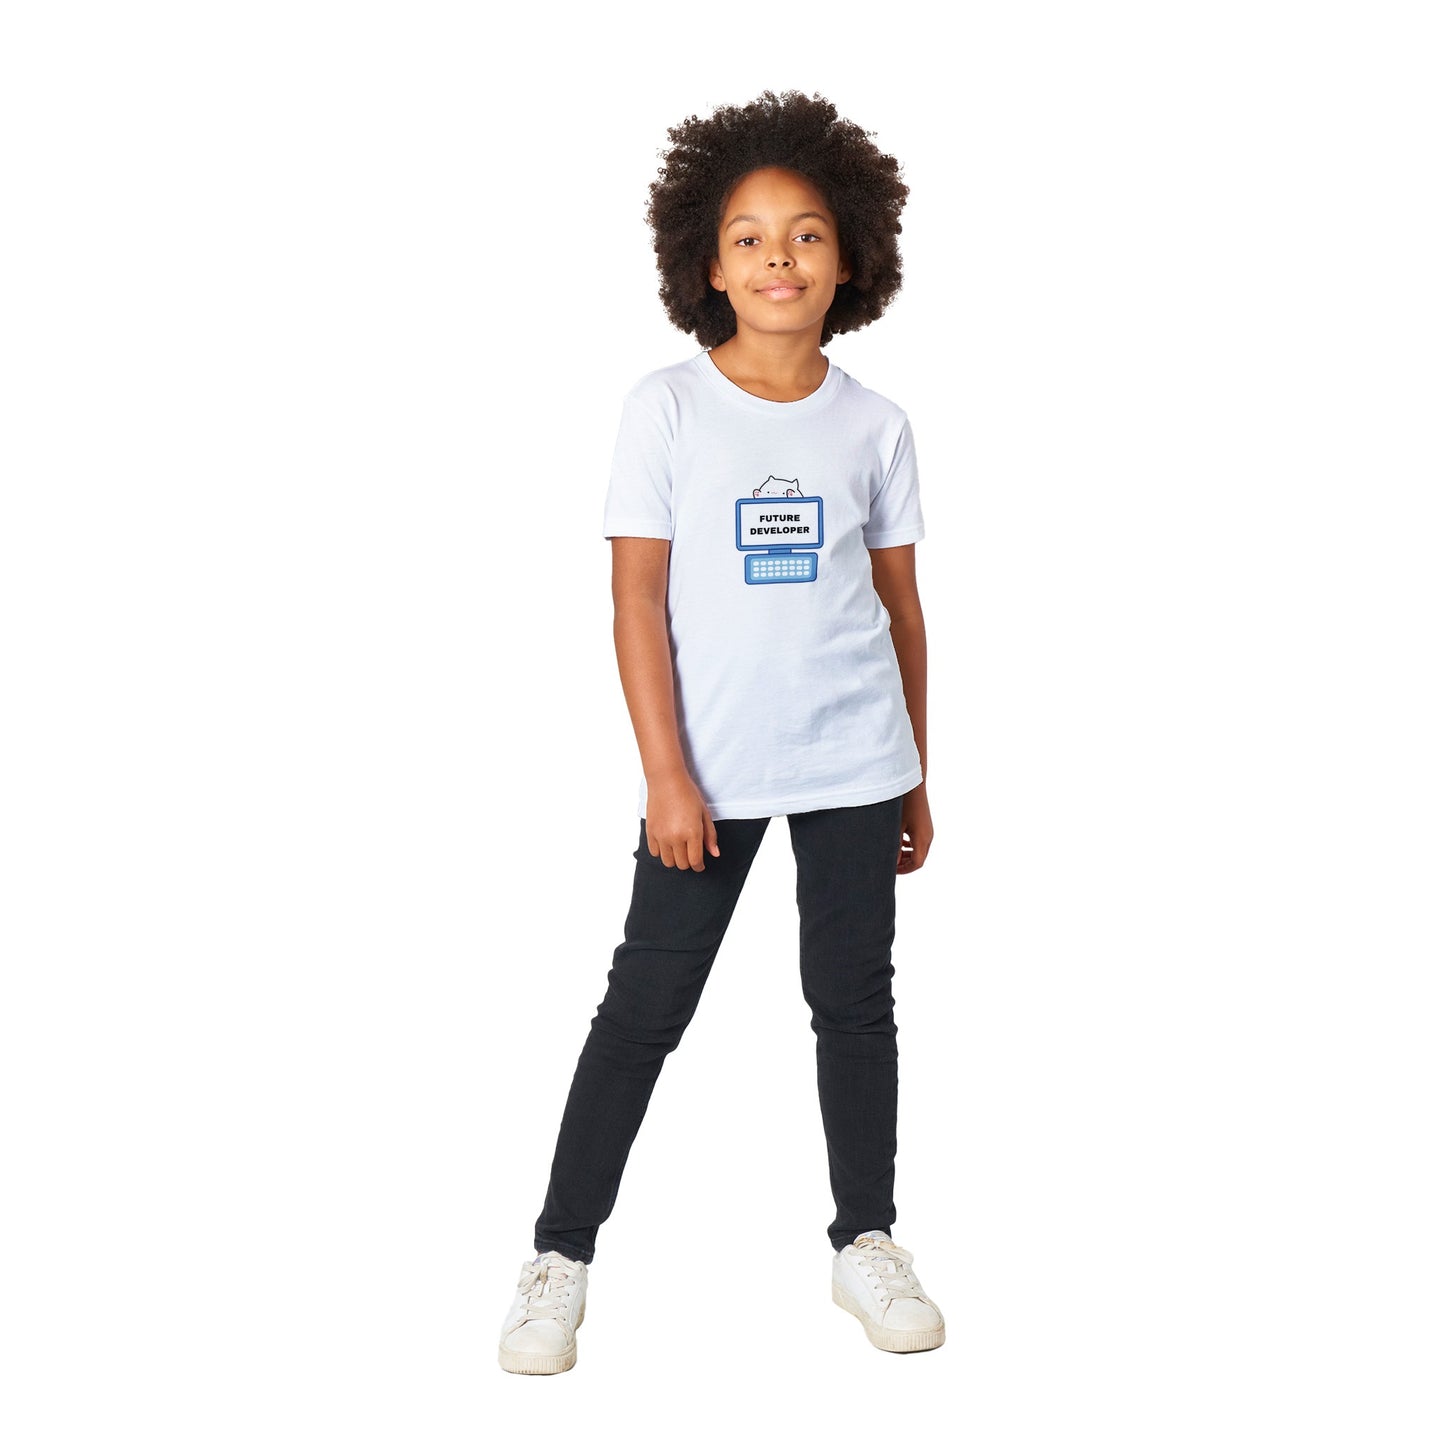 Kids Future Developer Premium T-shirt